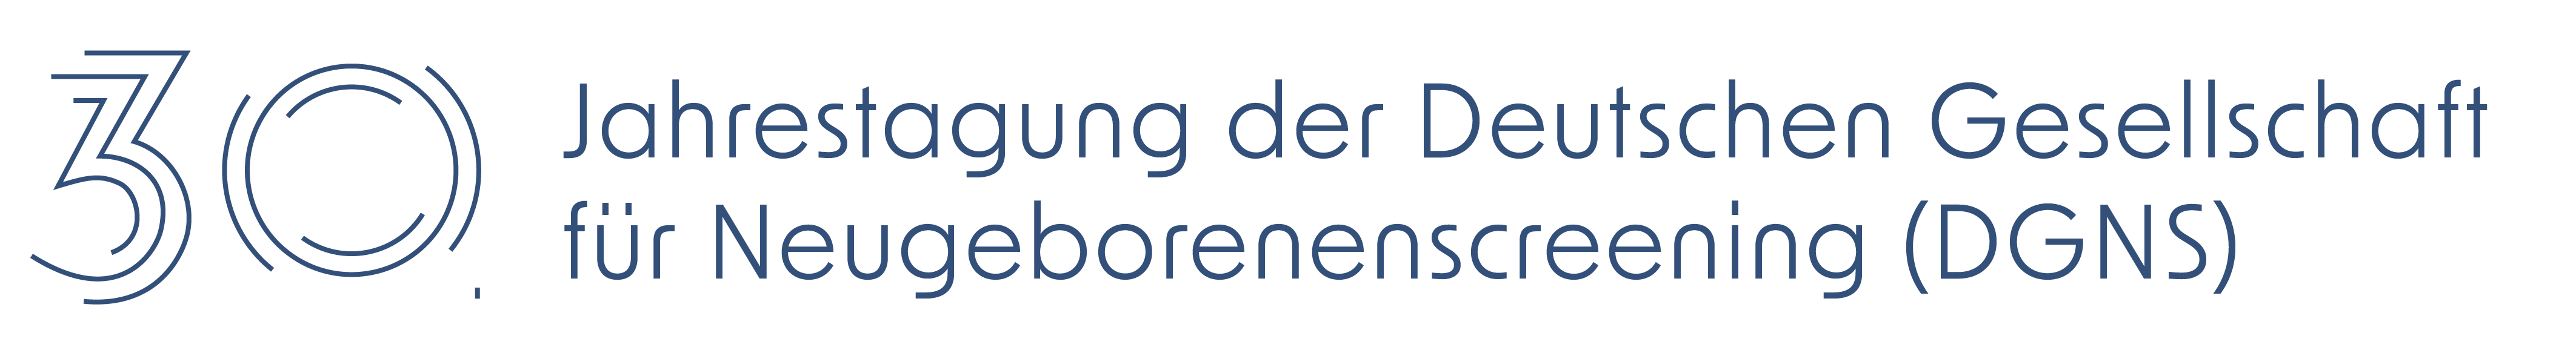 30. Jahrestagung der DGNS Logo